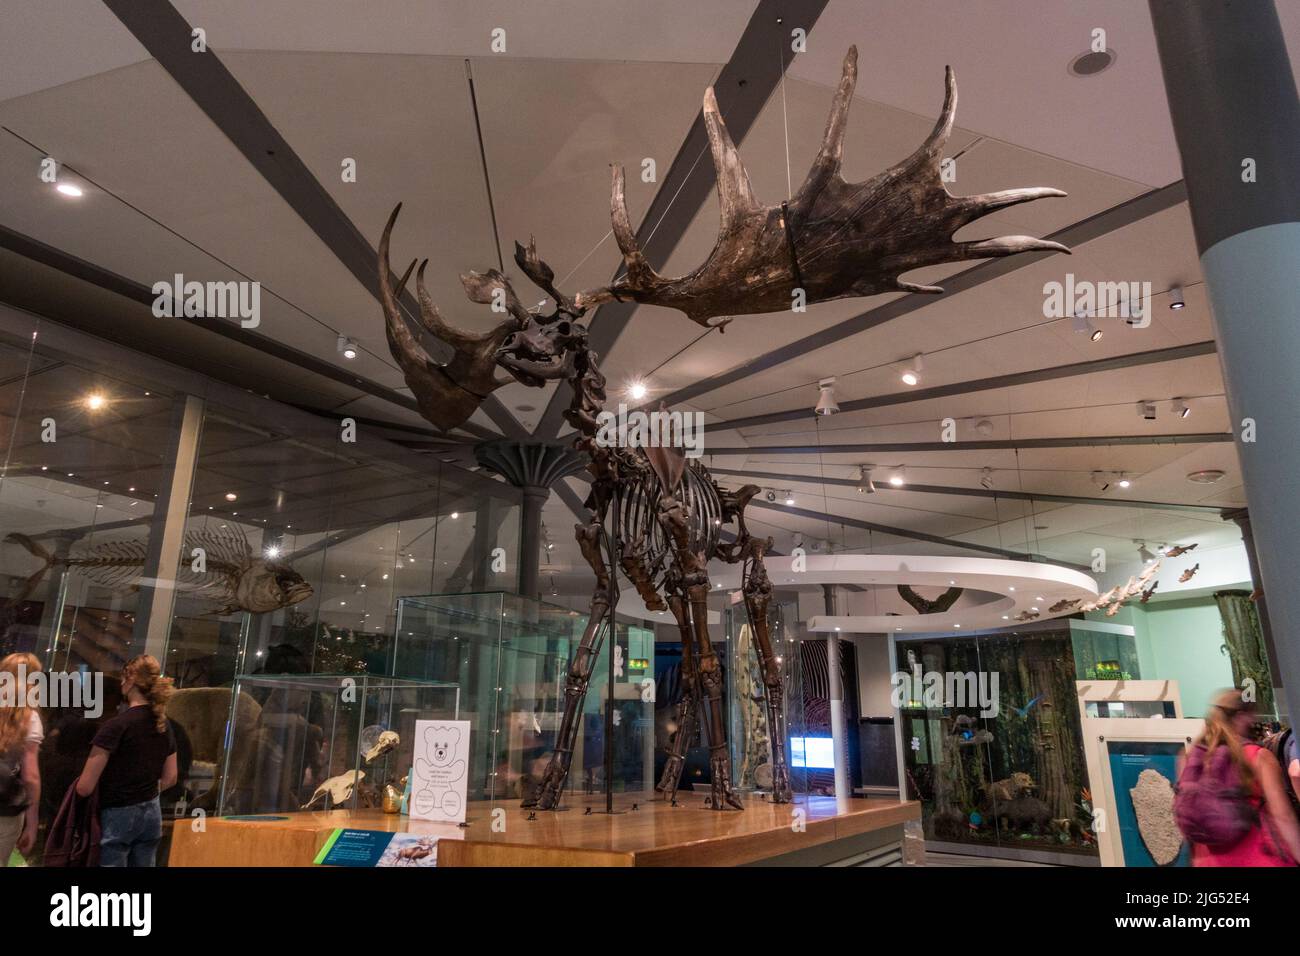 Ciervo gigante o esqueleto de alce irlandés (Megaloceros giganteus) en exhibición en el Museo de la Ciudad de Leeds, Leeds, West Yorkshire, Reino Unido. Foto de stock